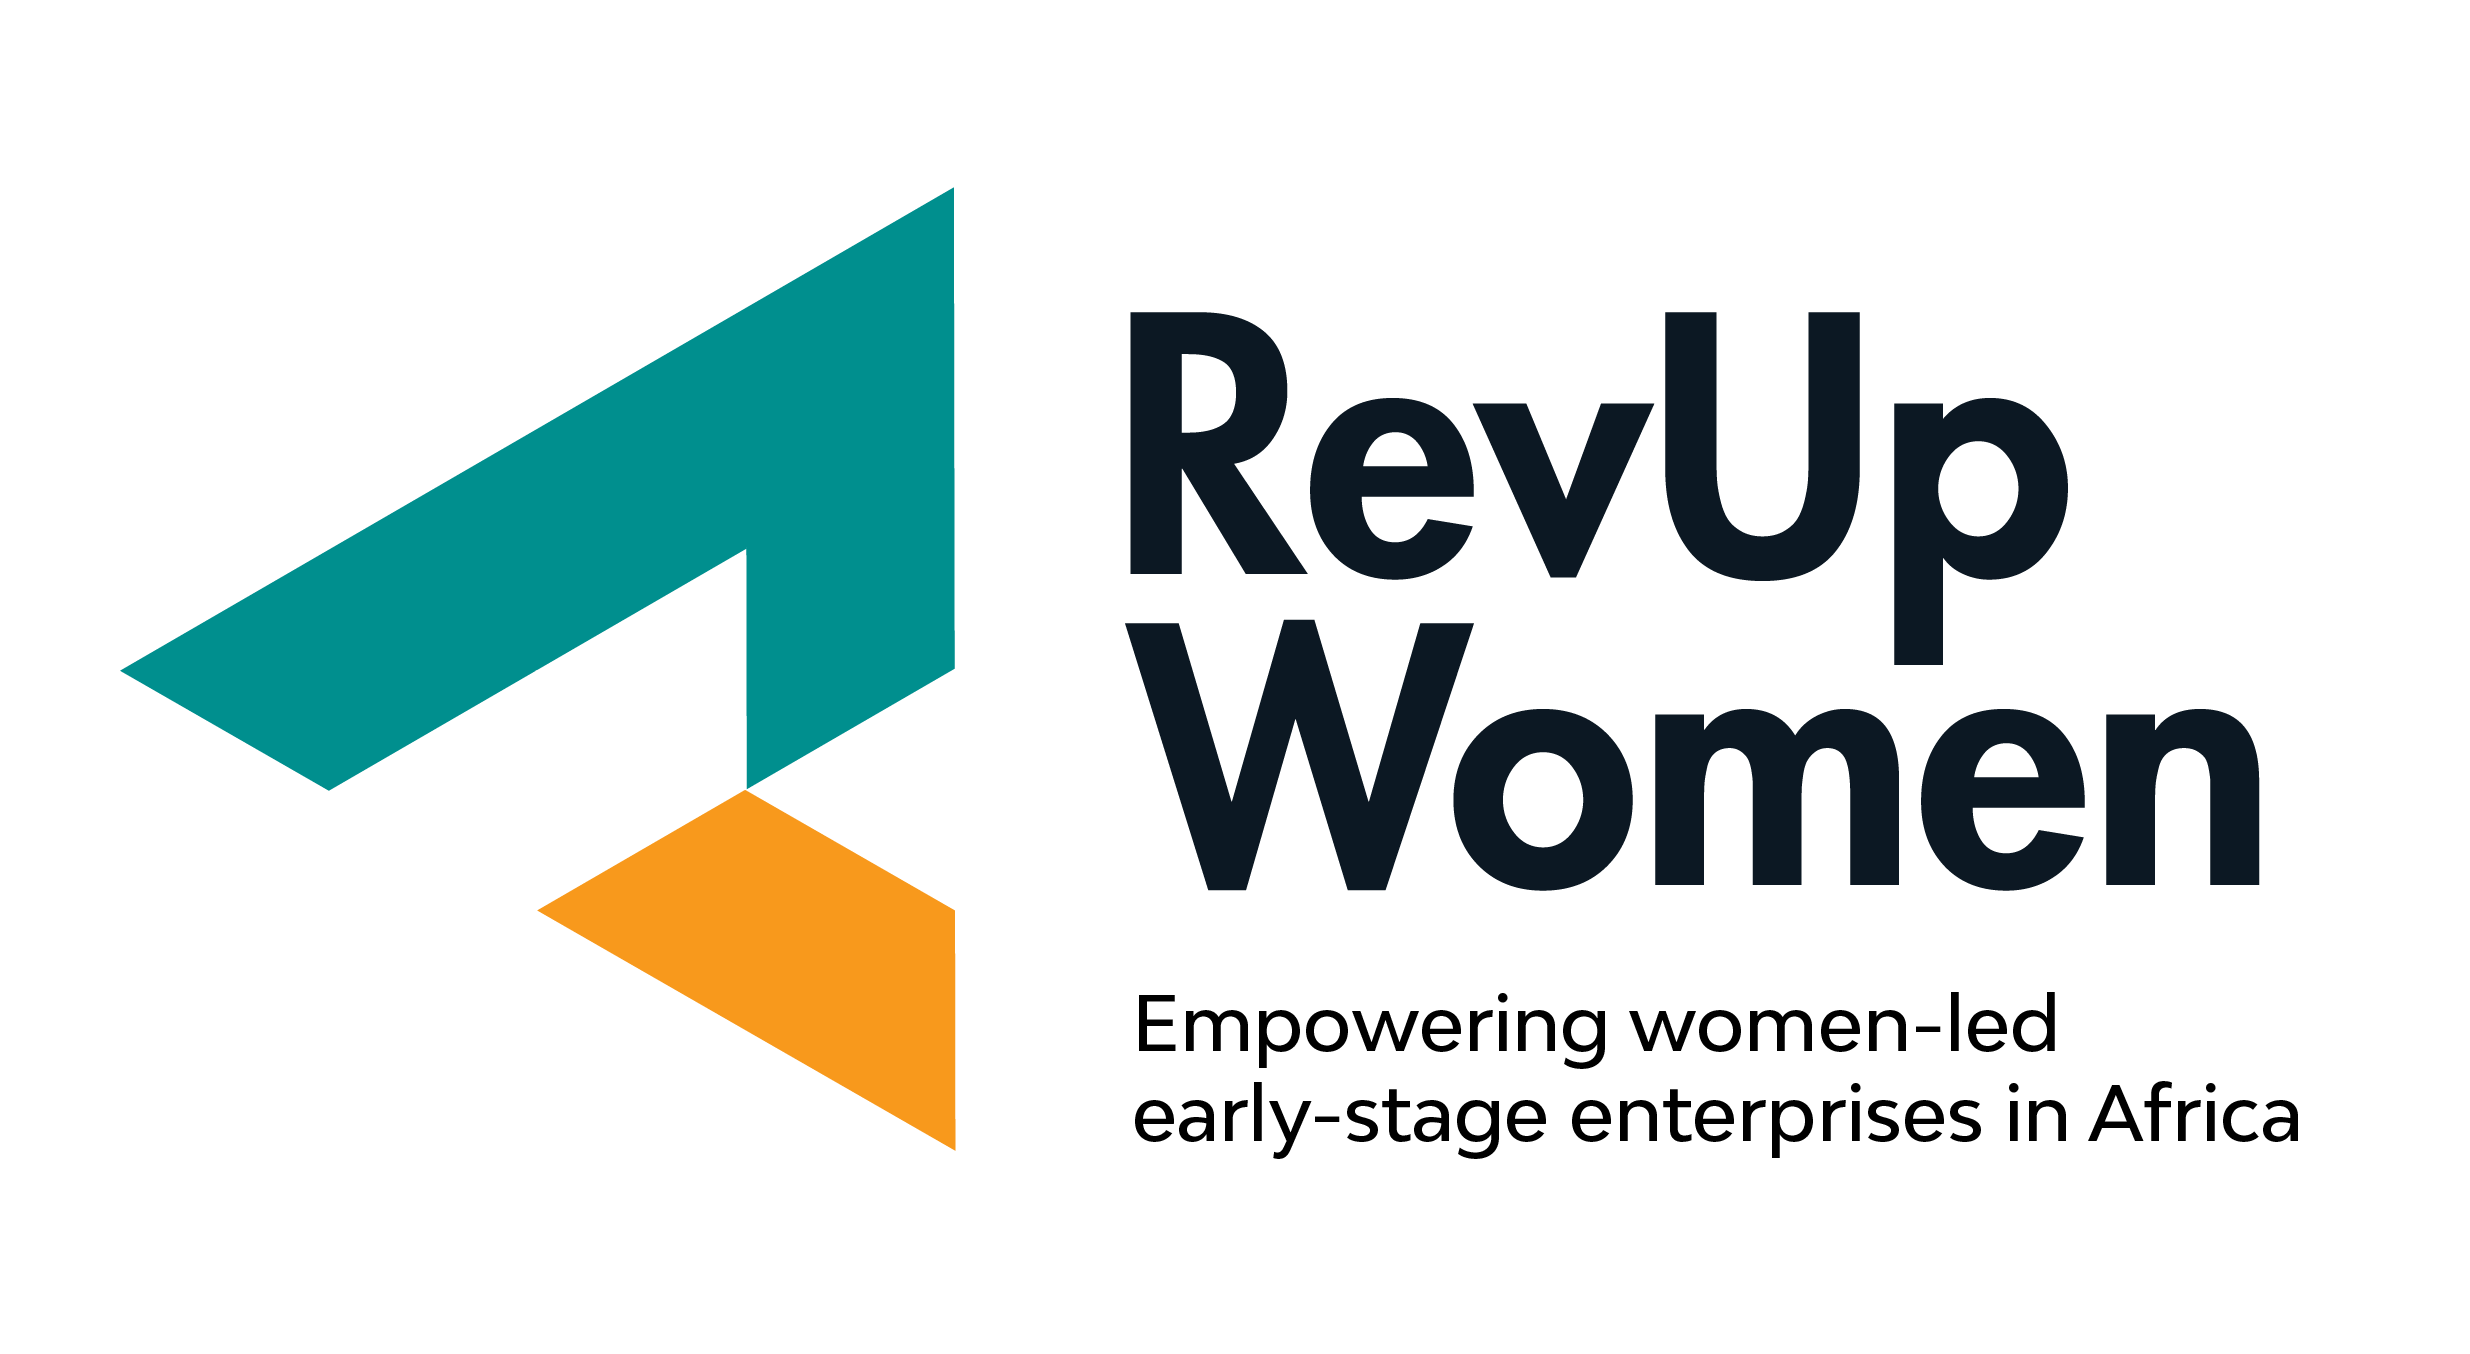 The RevUp Women Initiative